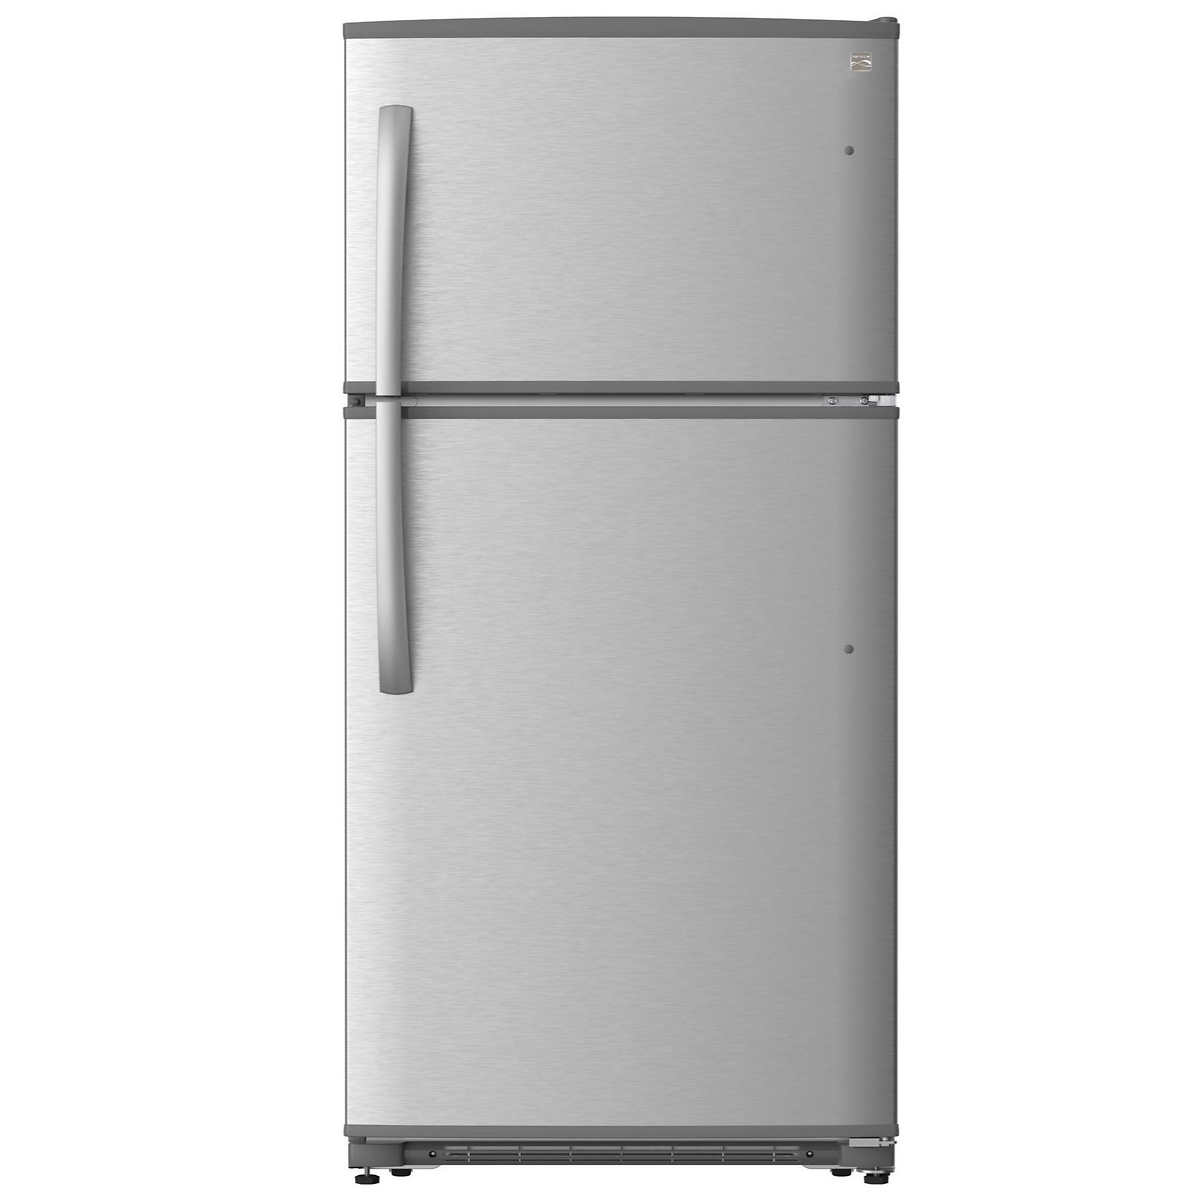 12+ Garage refrigerator hot weather ideas